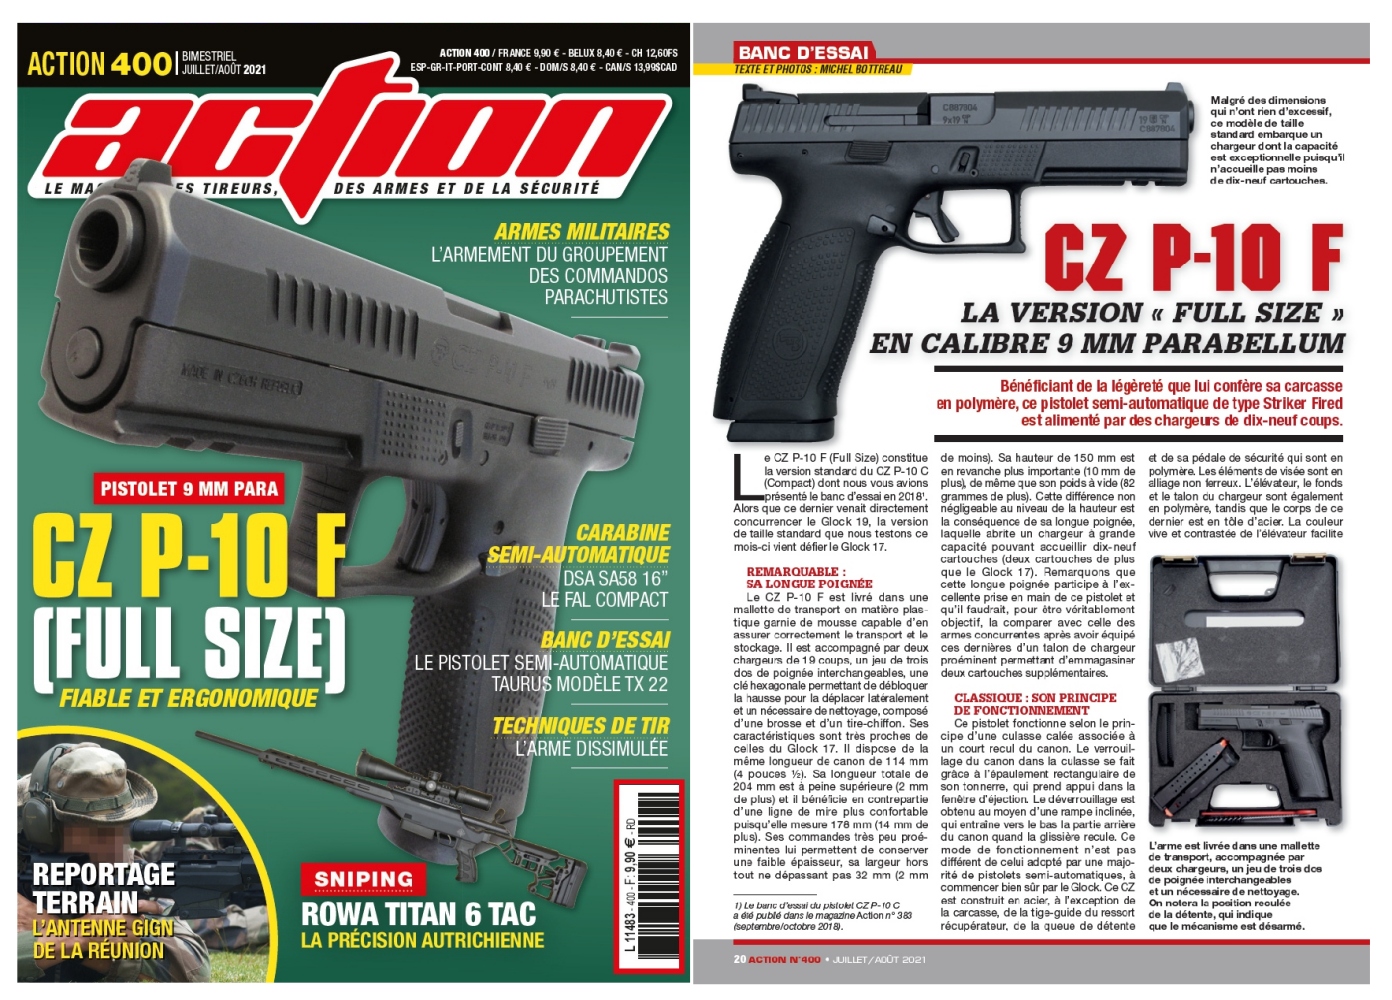 Le banc d’essai du pistolet CZ P-10 F a été publié sur 6 pages dans le magazine Action n°400 (juillet-août 2021). 